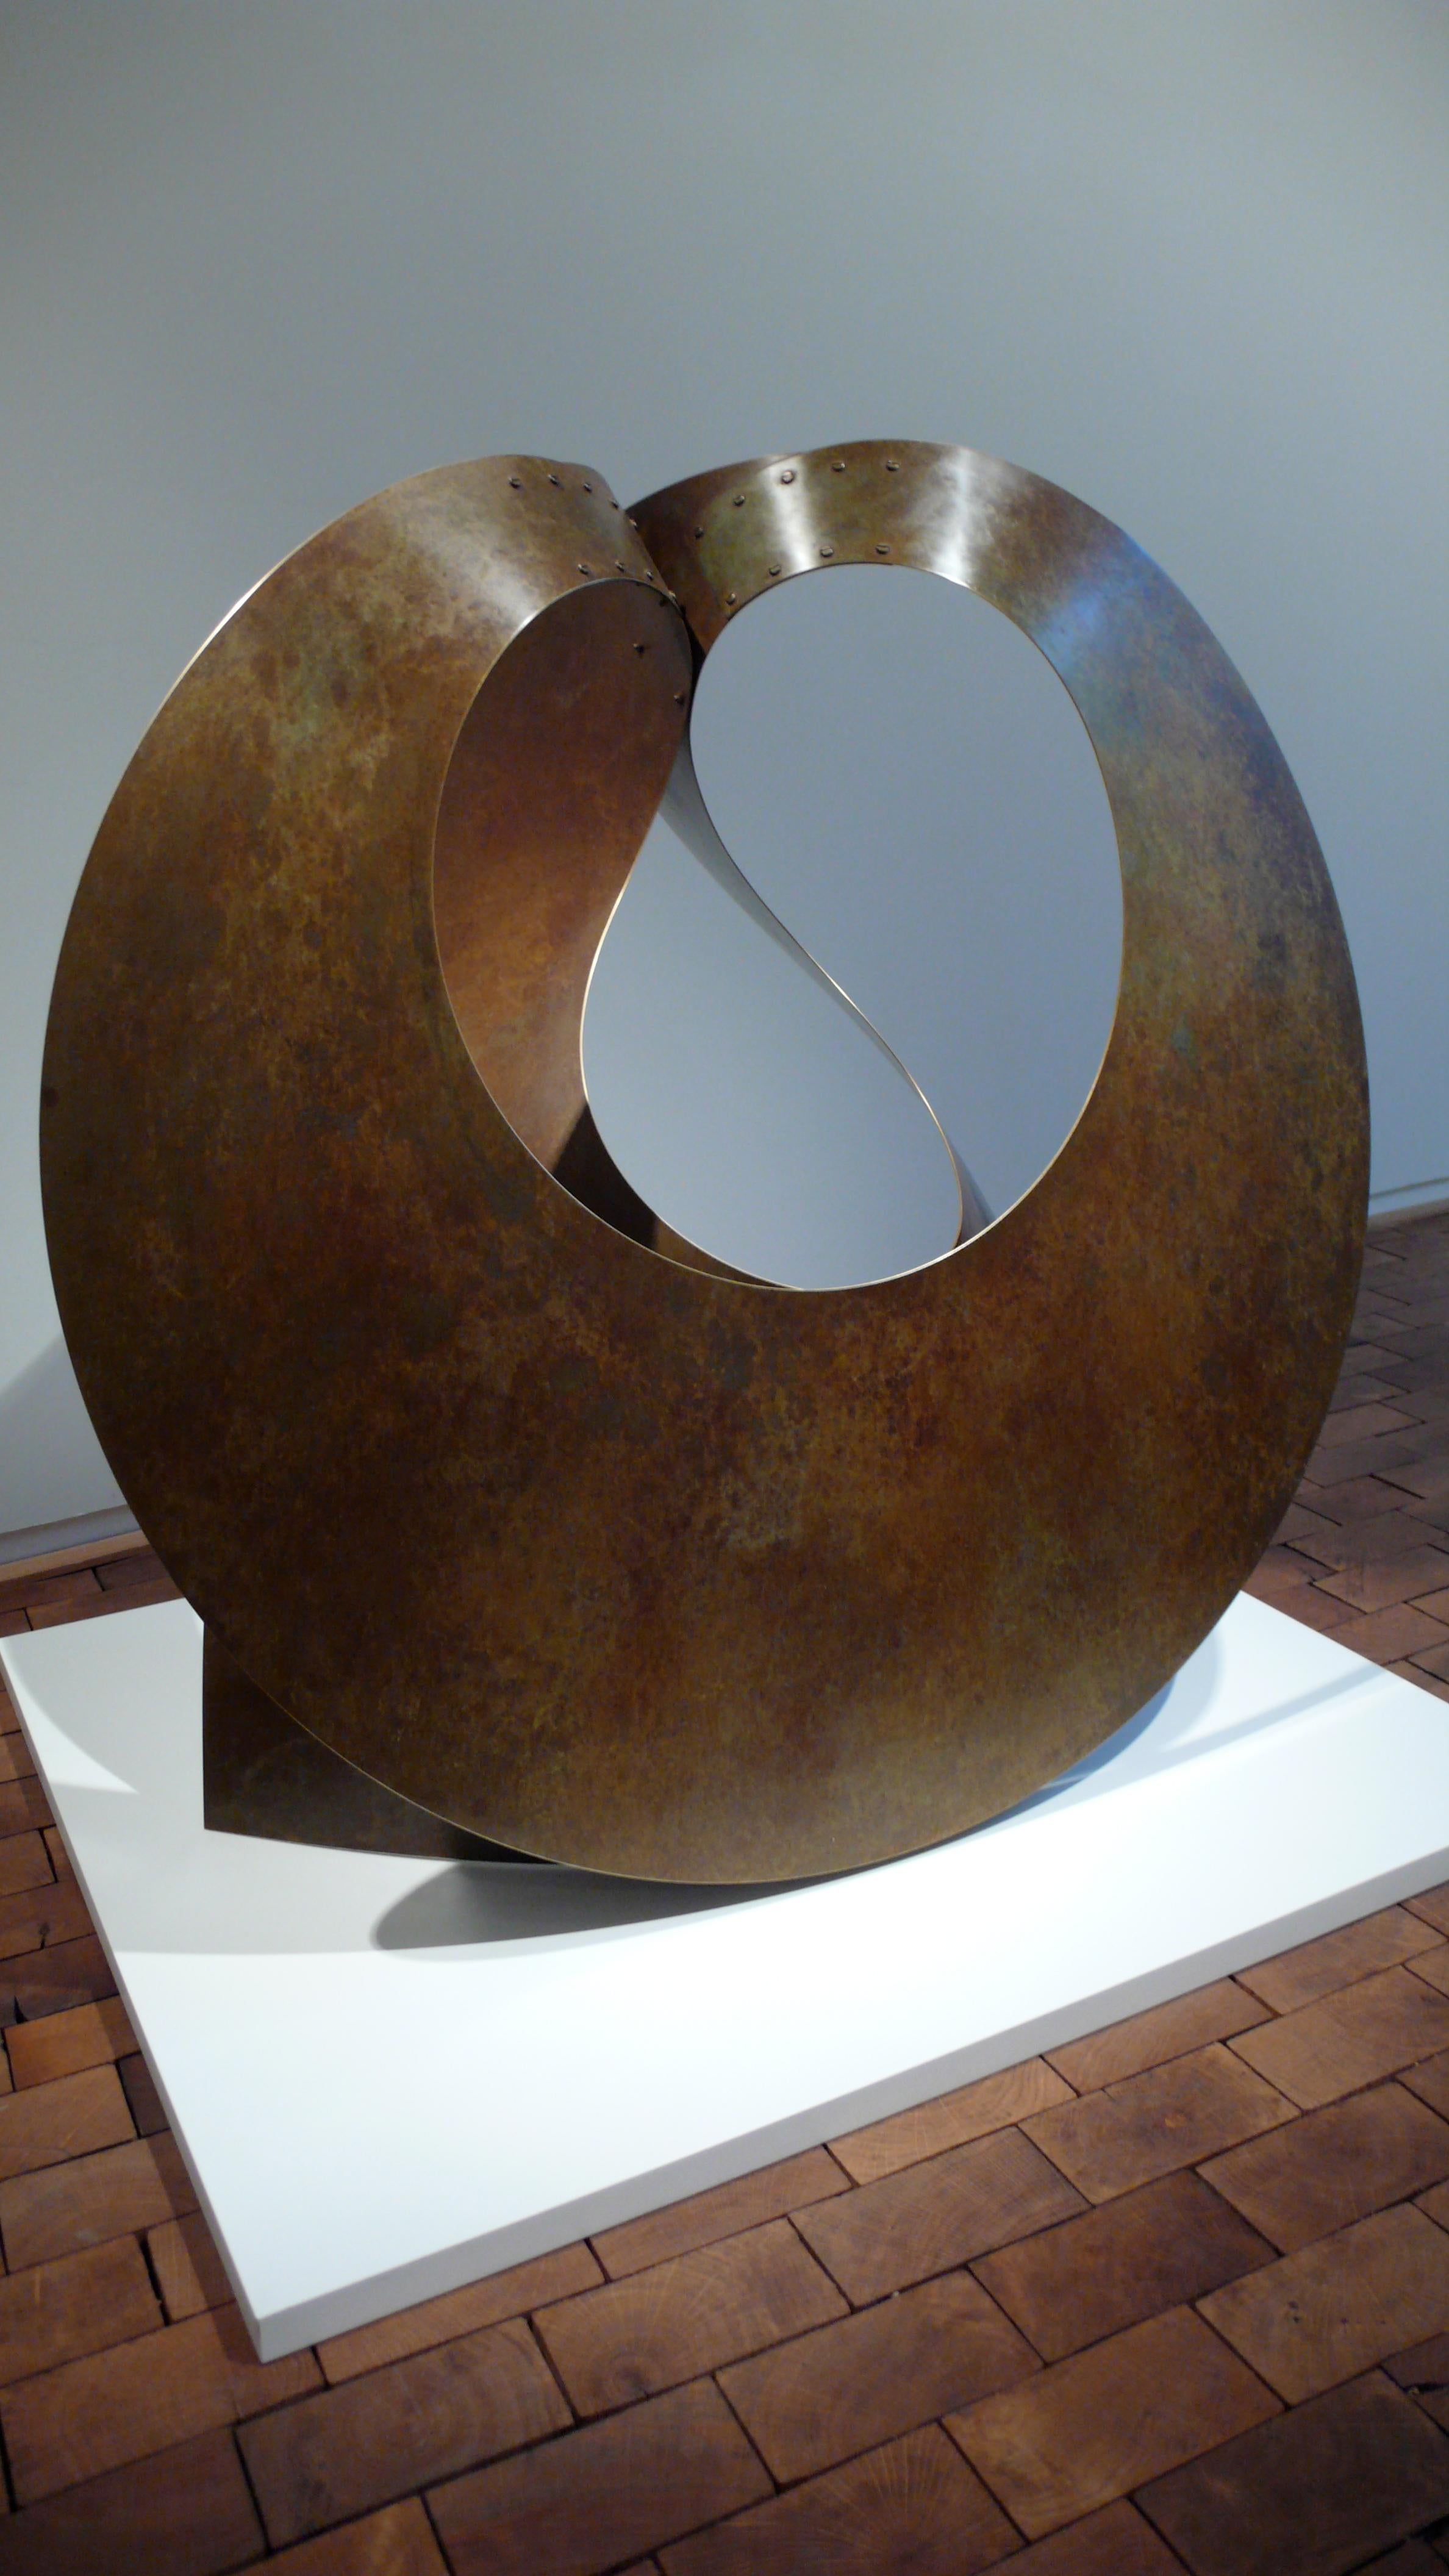 Elie Hirsch Abstract Sculpture - "Surface 2" Large Brass Sculpture